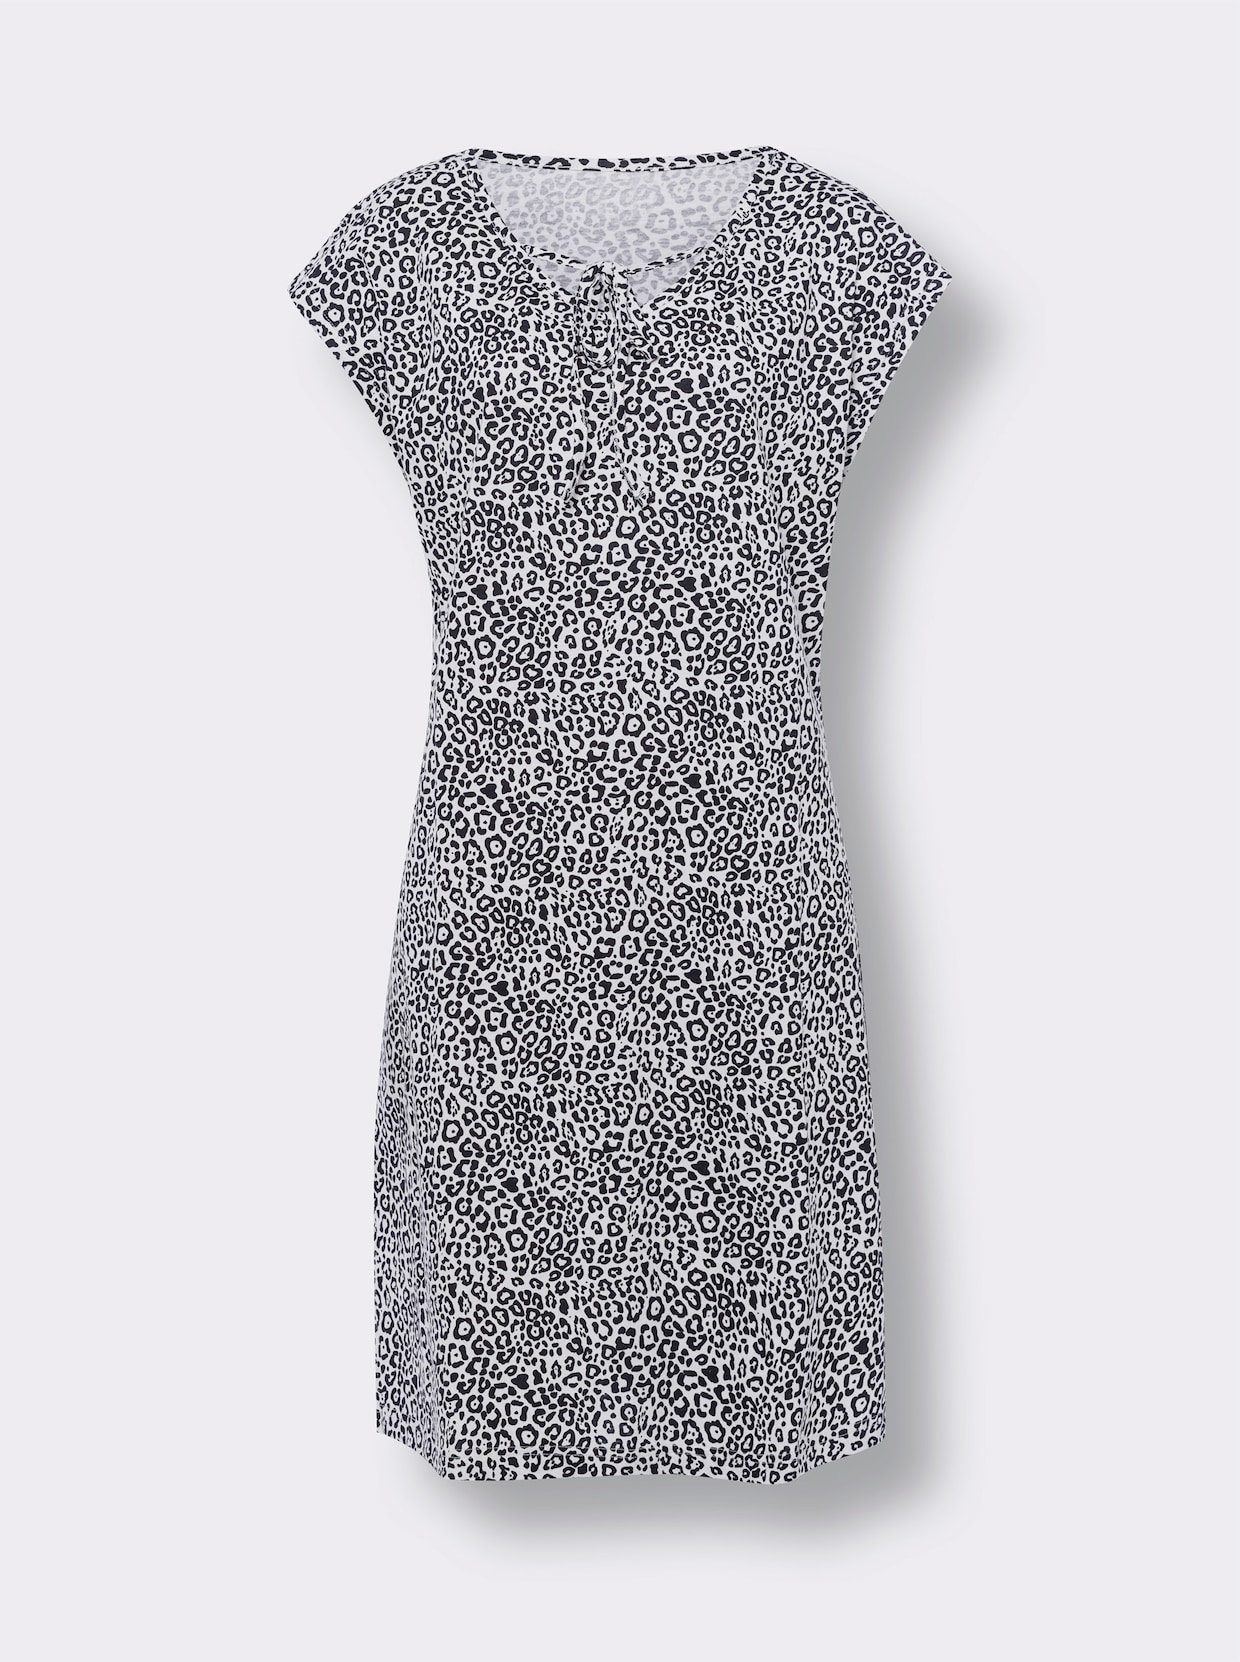 Sommerkleid - schwarz-weiß-bedruckt